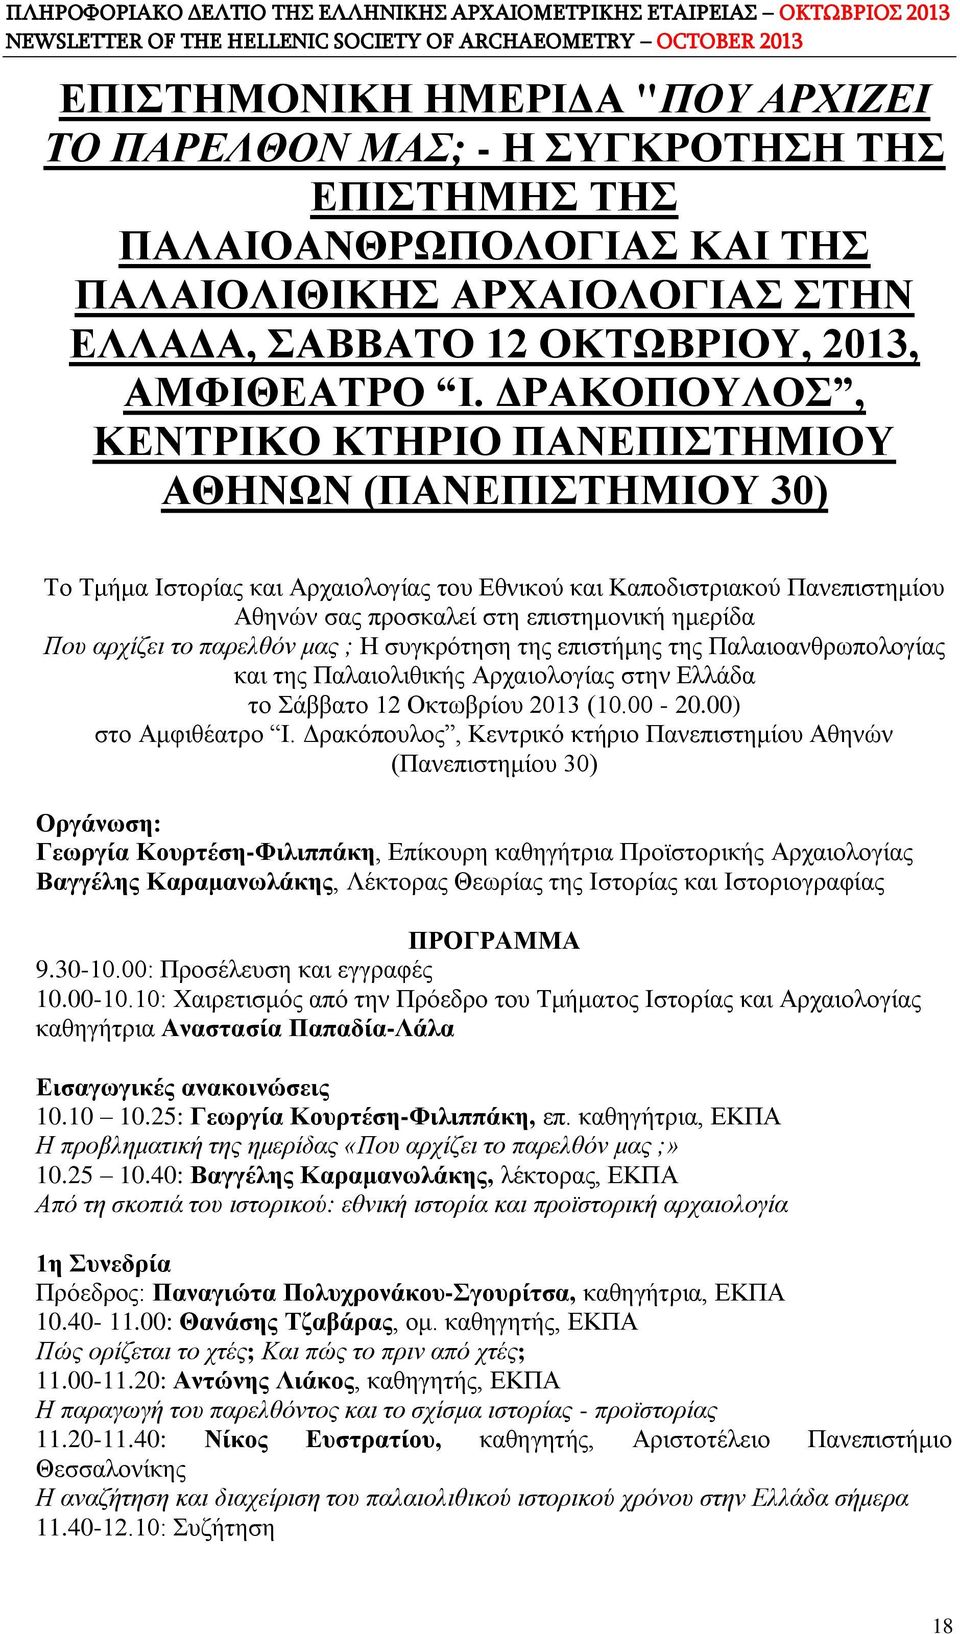 αρχίζει το παρελθόν μας ; Η συγκρότηση της επιστήμης της Παλαιοανθρωπολογίας και της Παλαιολιθικής Αρχαιολογίας στην Ελλάδα το Σάββατο 12 Οκτωβρίου 2013 (10.00-20.00) στο Αμφιθέατρο I.